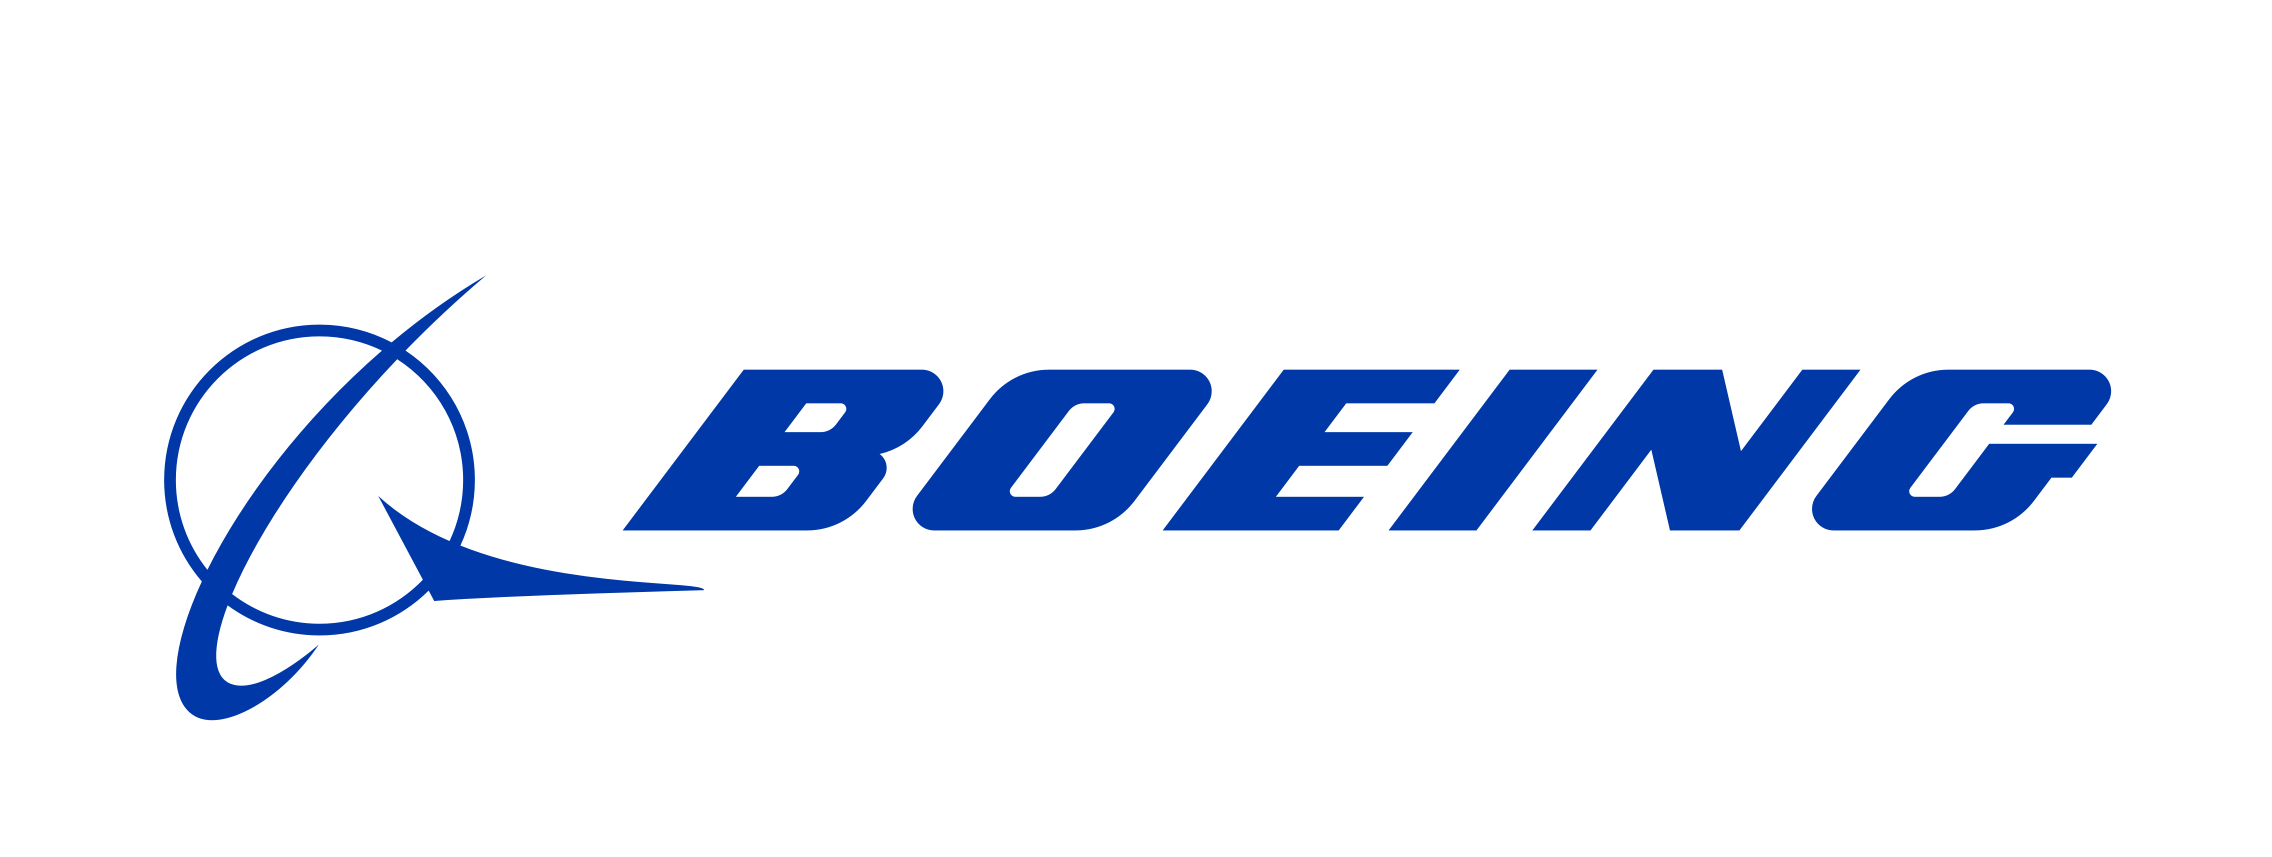 Conseils en Bourse pour l’action Boeing